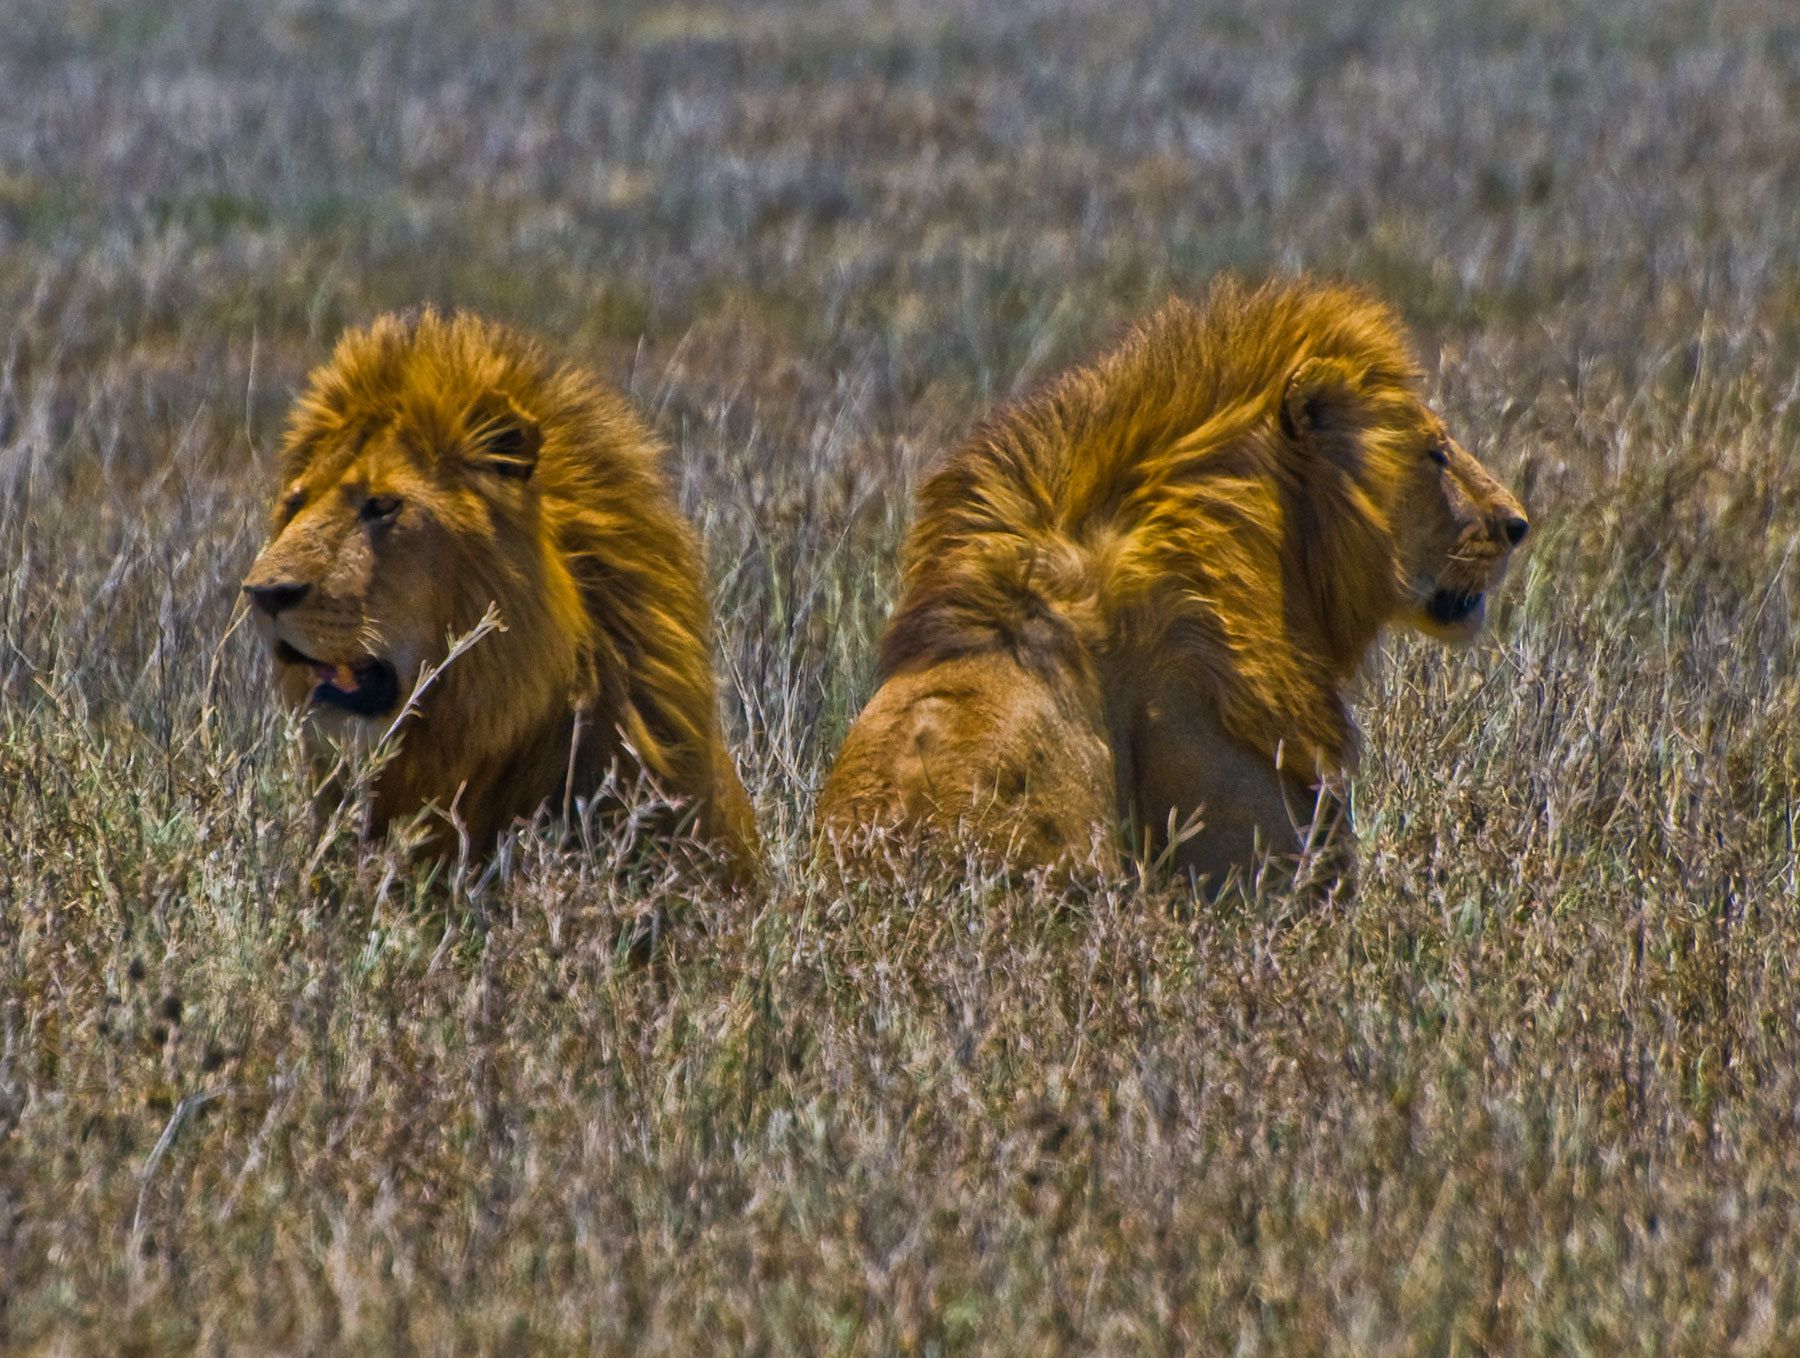 Male Lions, Ngorongoro Crater, Tanzania